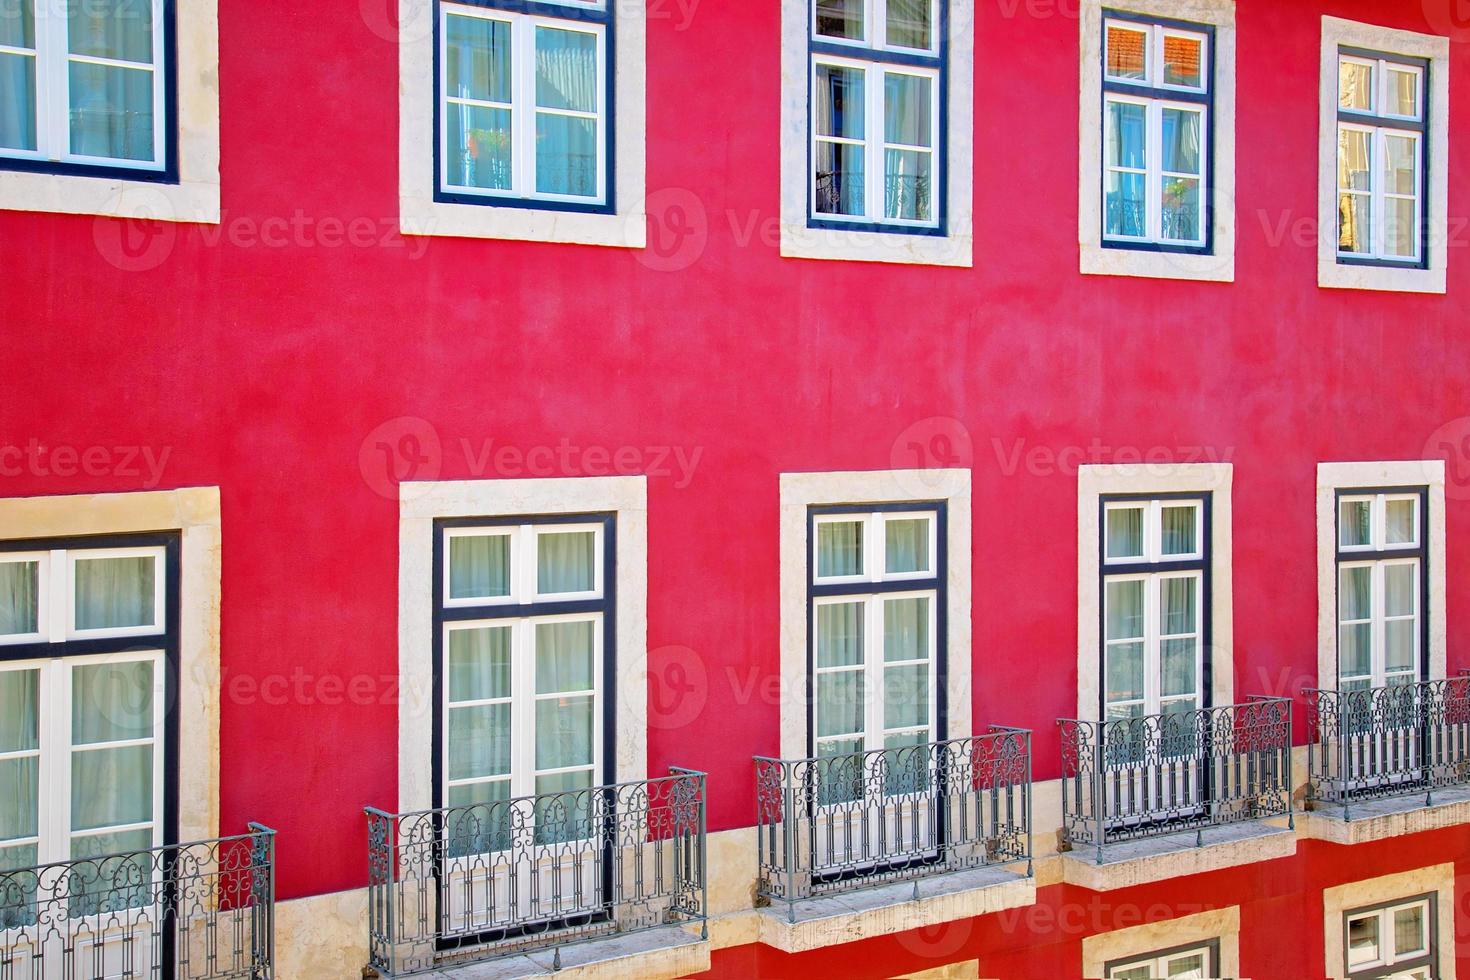 färgglada gator i Lissabon foto